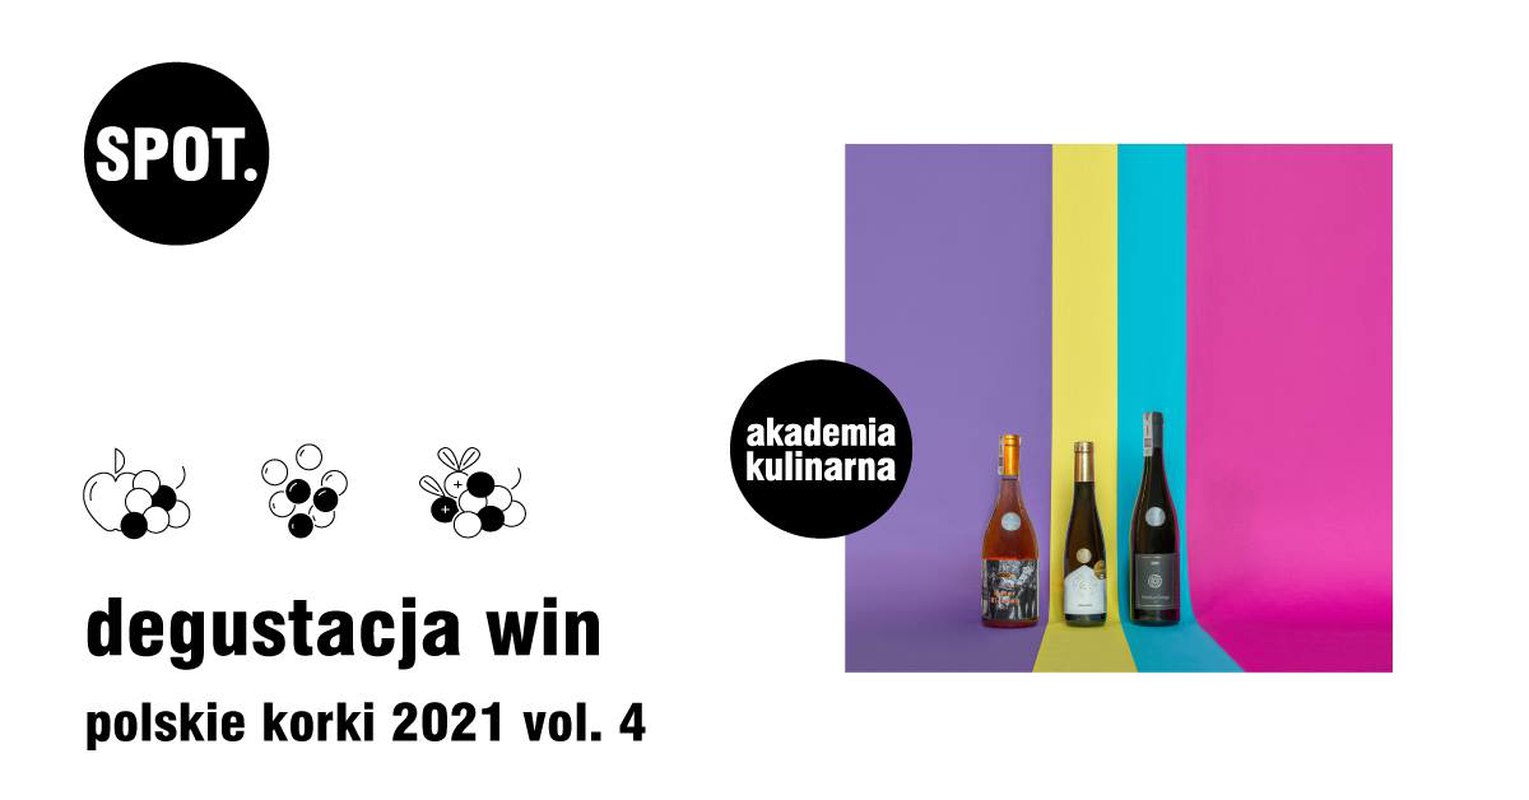 Degustacja win_polskie korki 2021 vol. 4